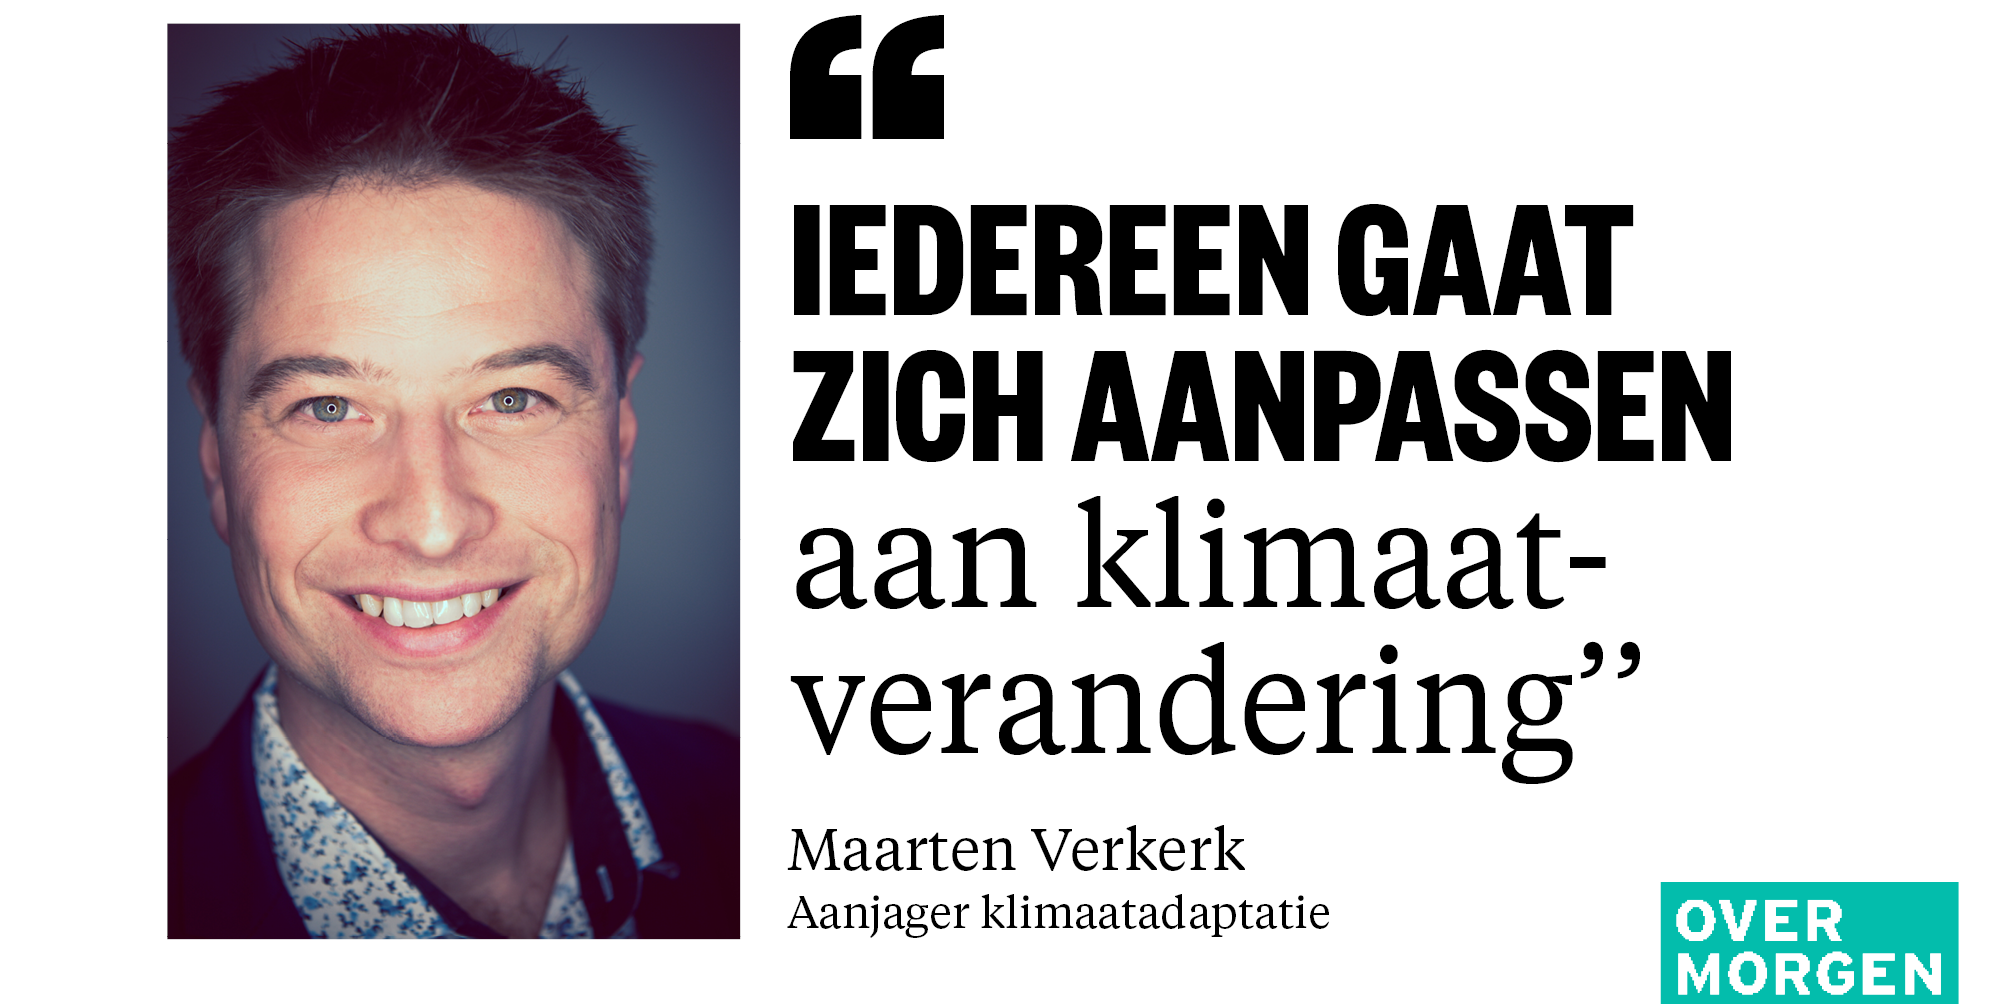 Maarten Verkerk